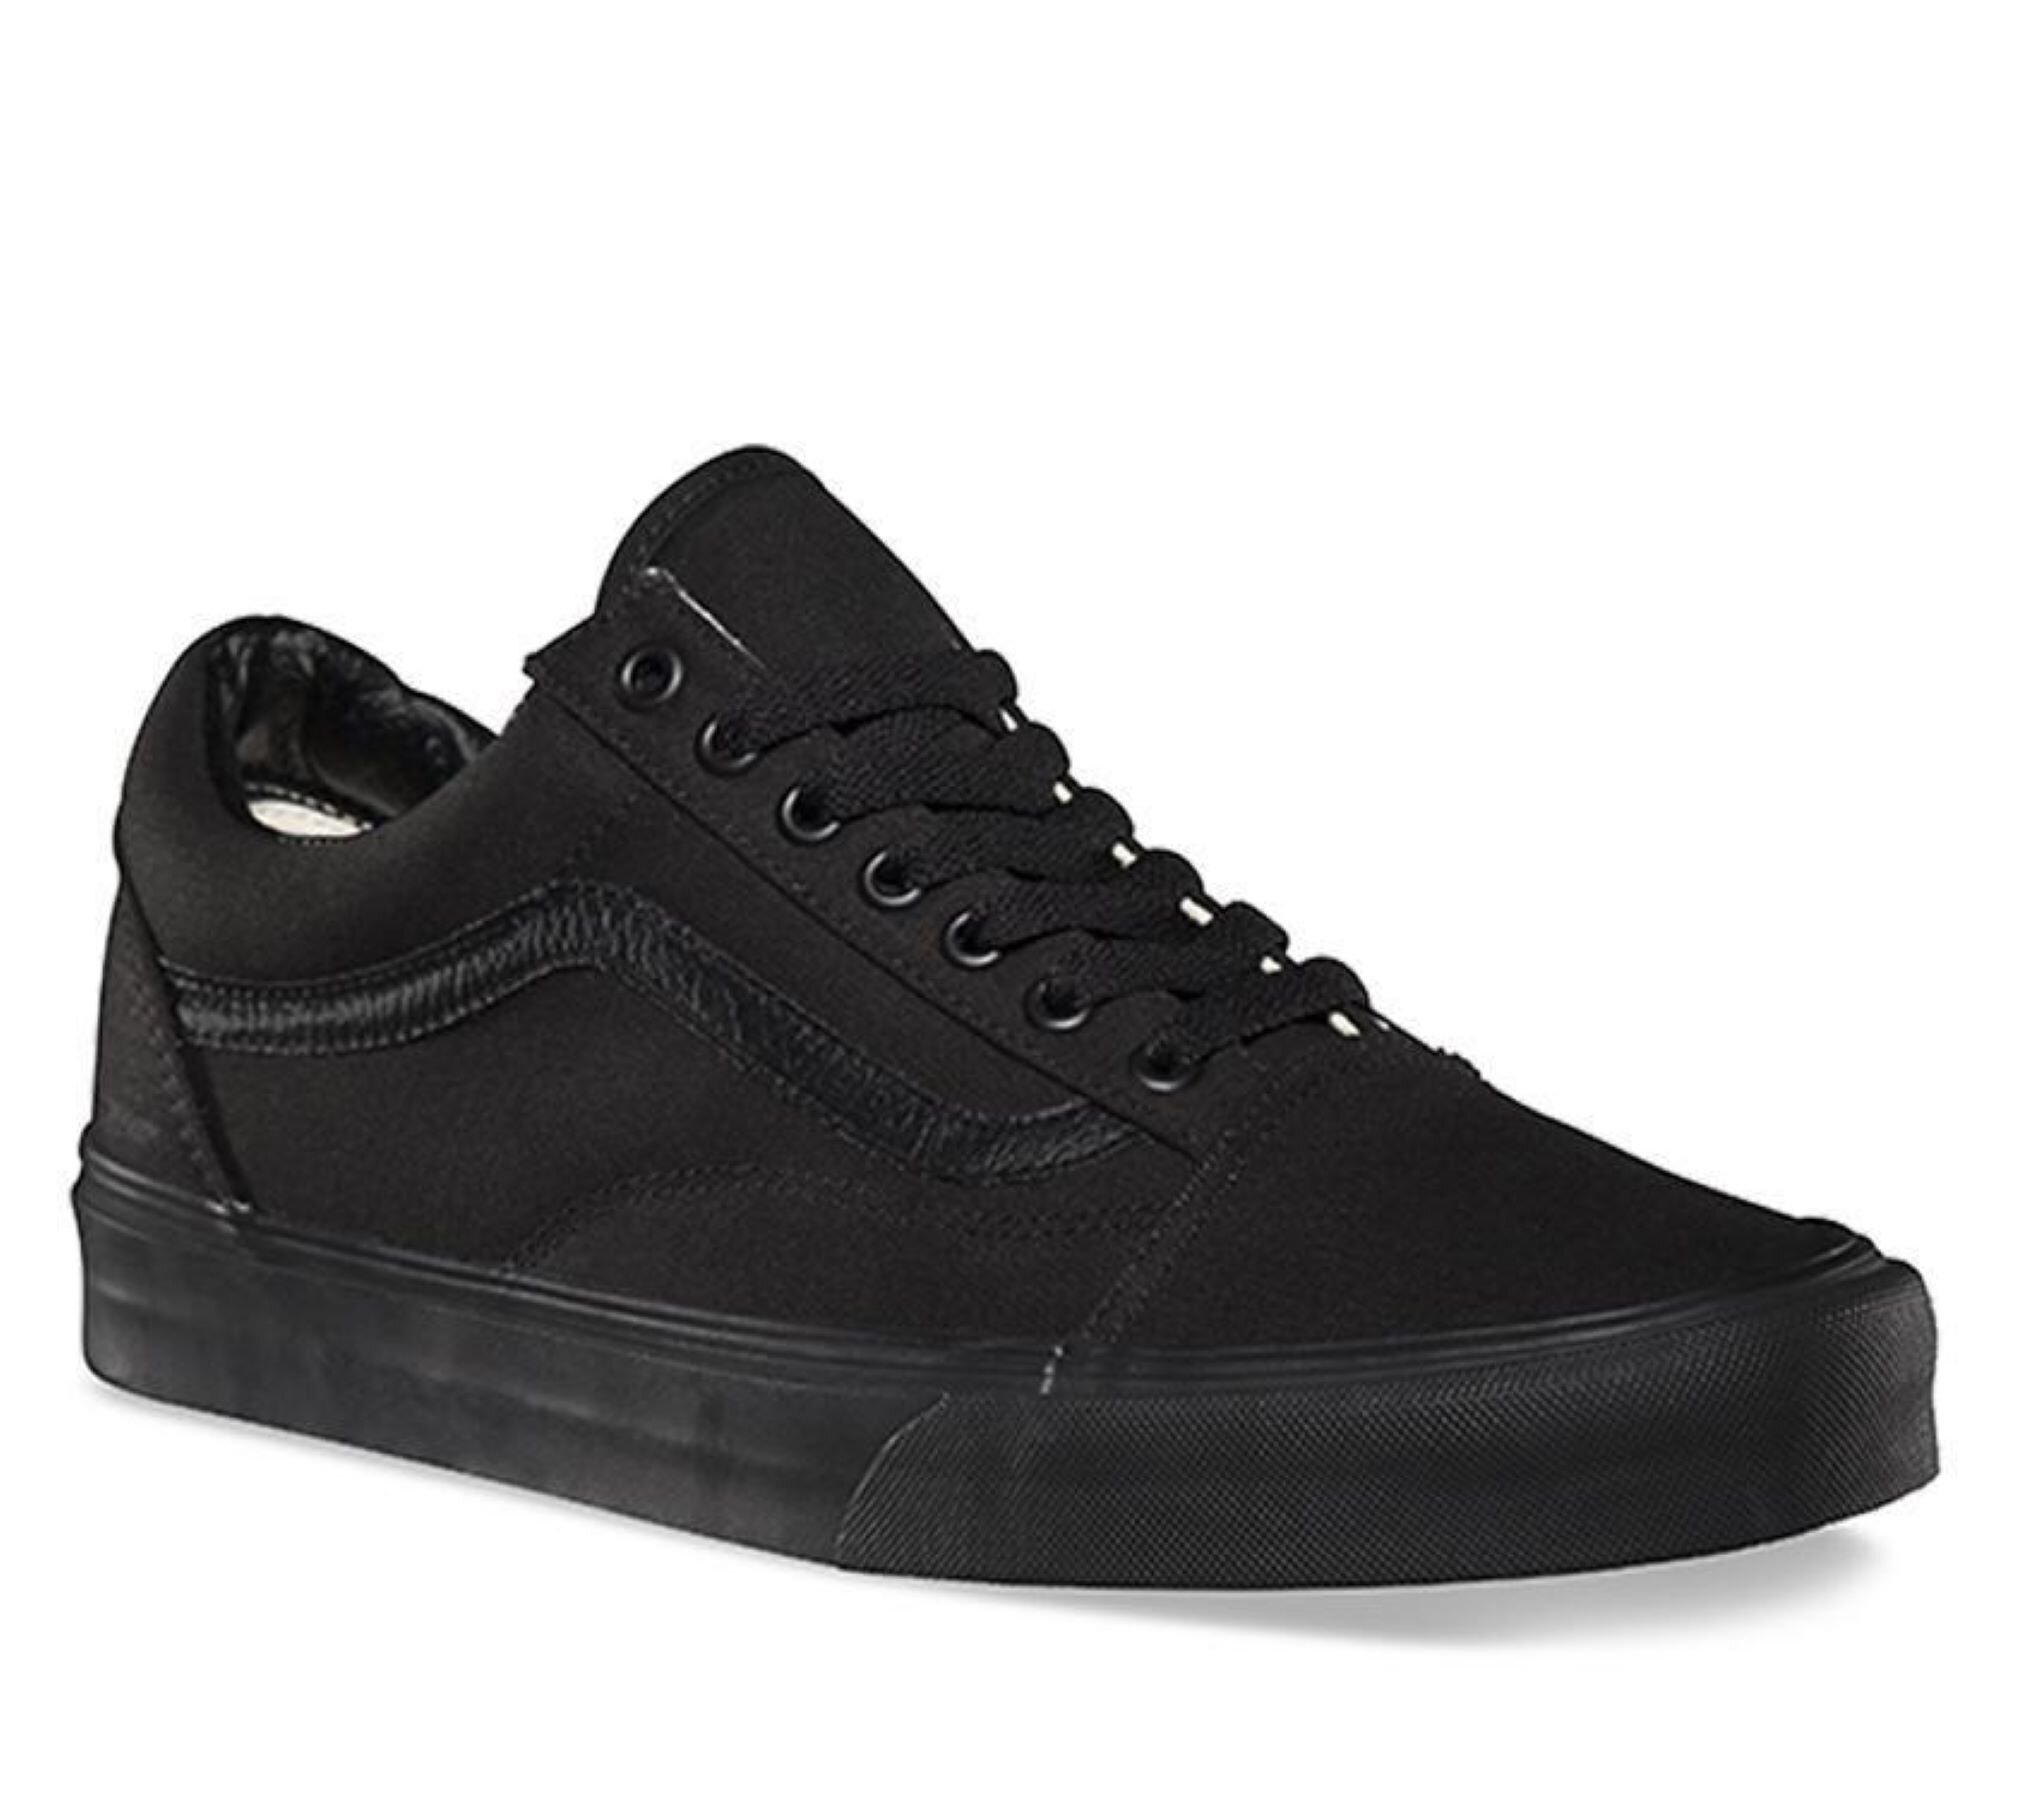 Vans Teen Old Skool - Black/Black - FOOTWEAR-Sneakers Kids Clothing NZ : Shop Online Kid - Vans MATA